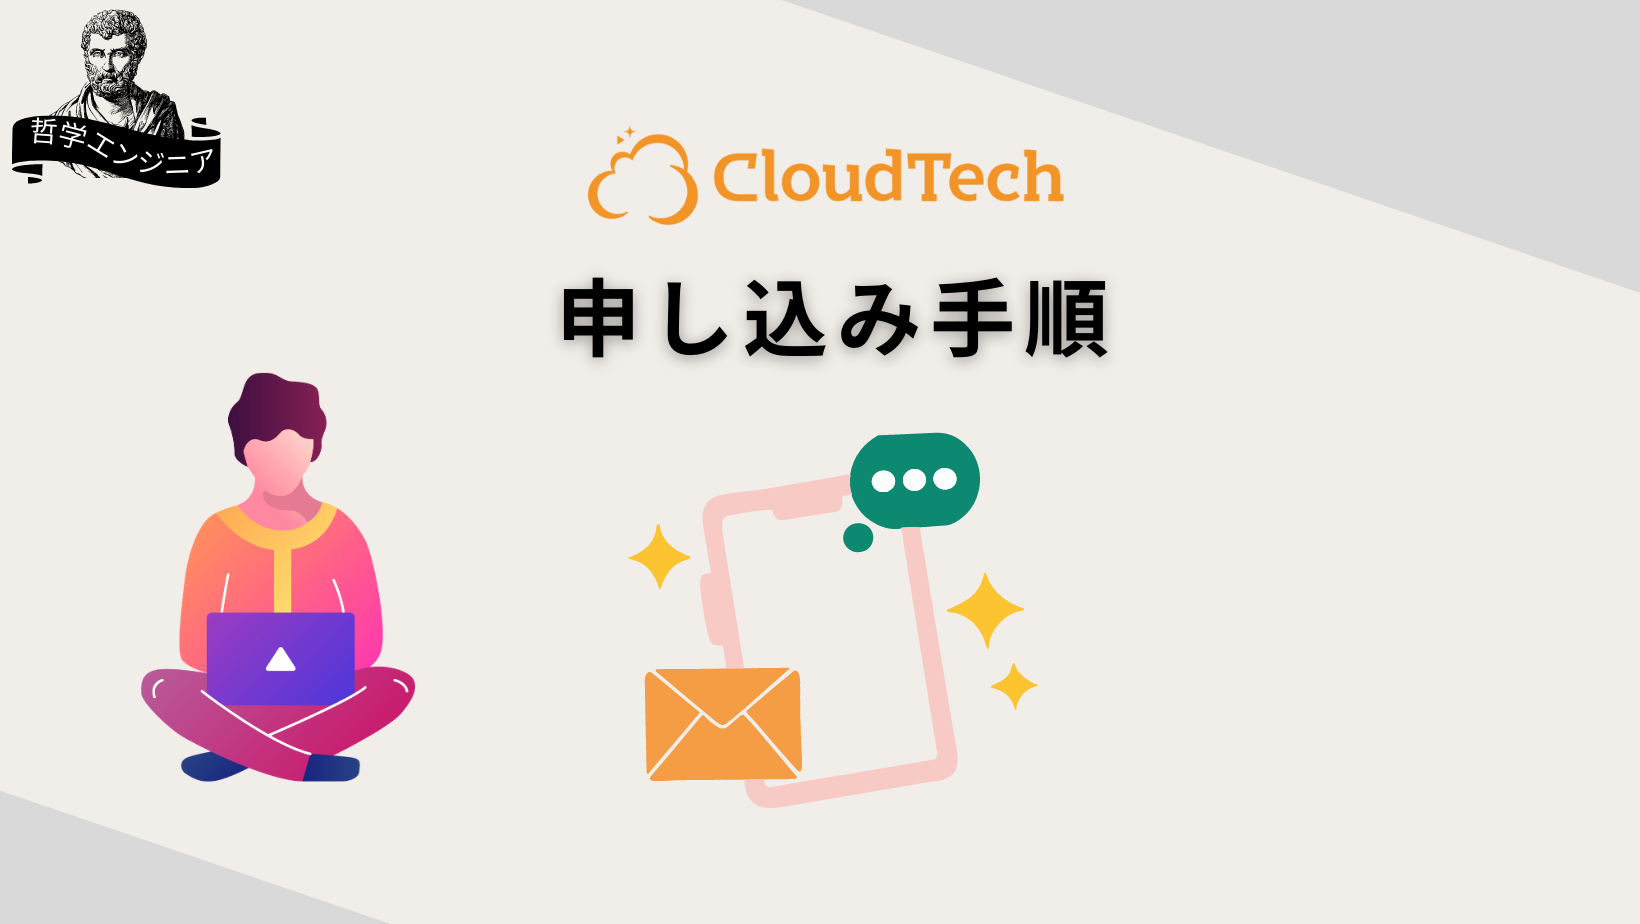 CloudTech 申し込み手順 割引コード クーポン